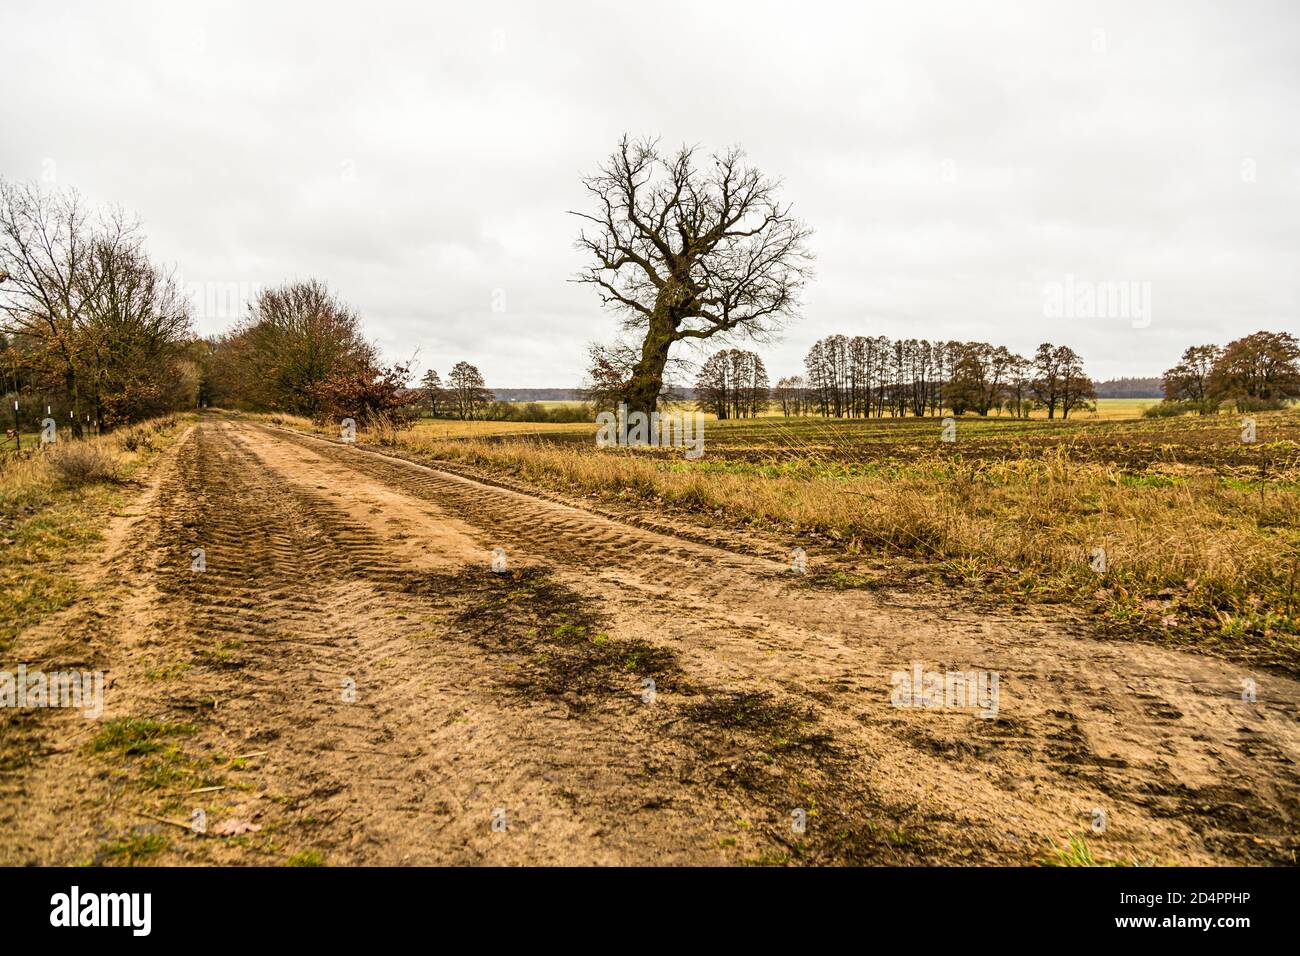 Rural Landscape near Fincken, Germany Stock Photo